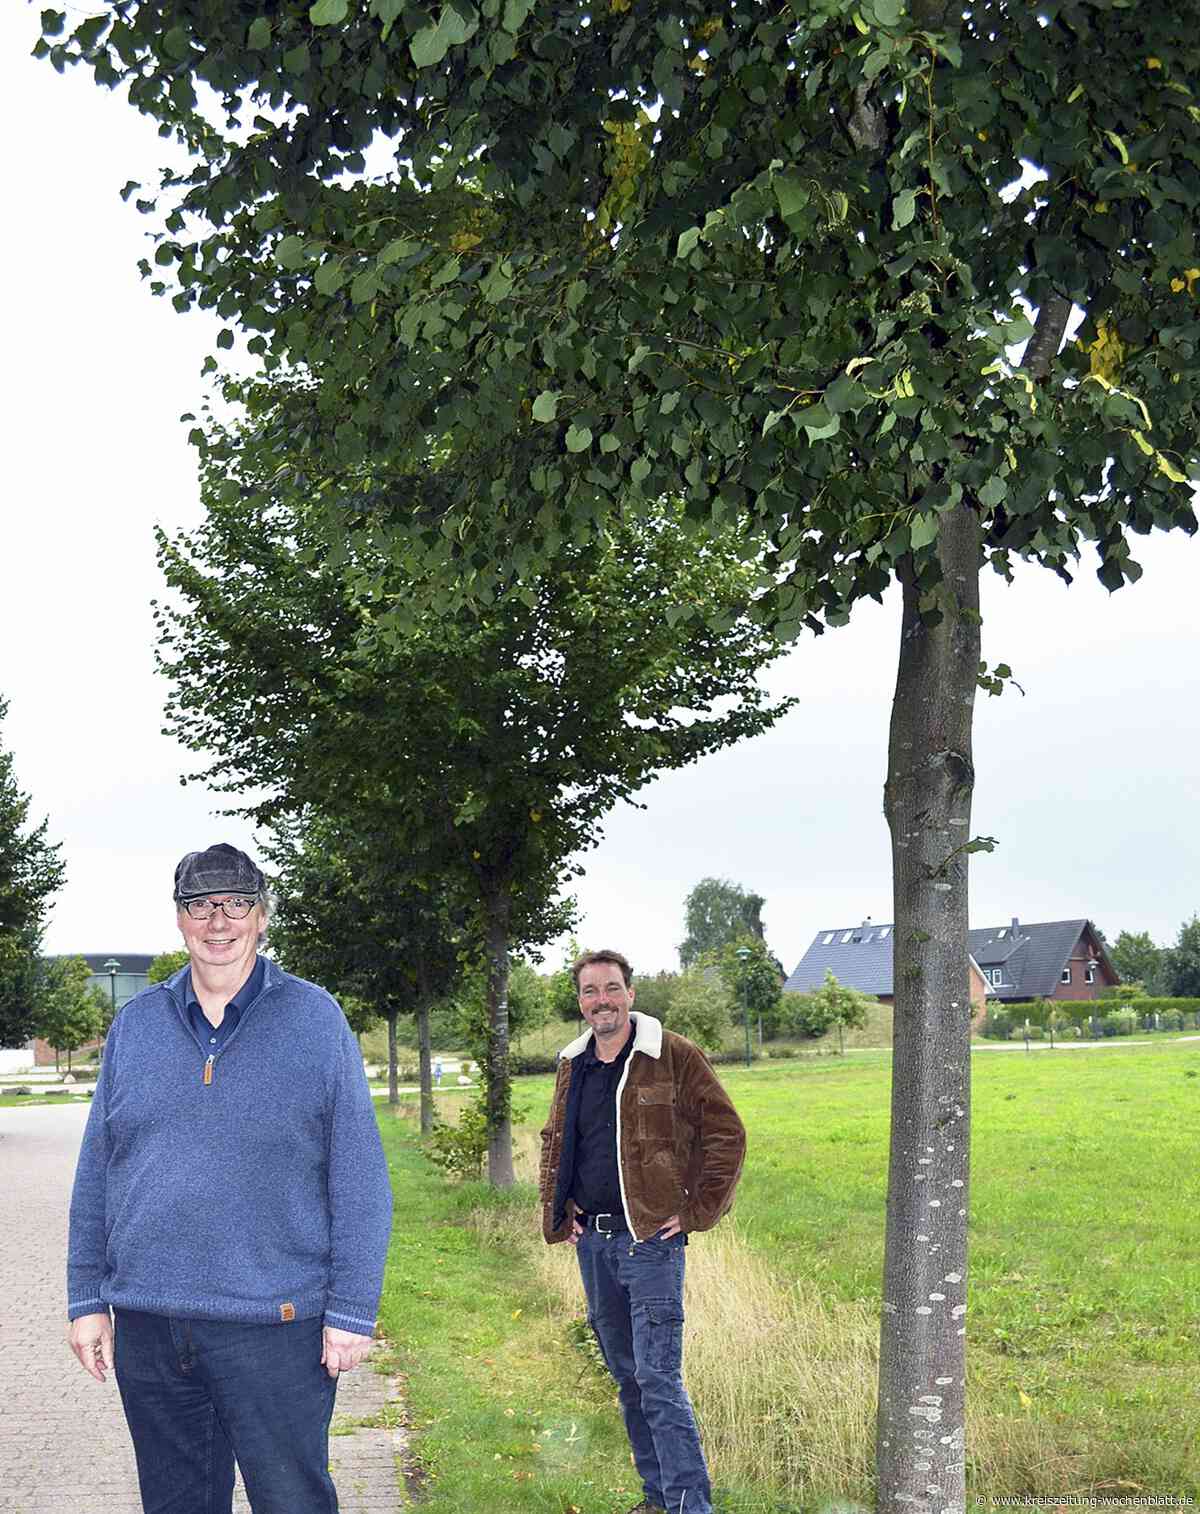 Arbeitskreis Naturschutz stinksauer: Bäume in Heidenau werden totgespritzt - Kreiszeitung Wochenblatt